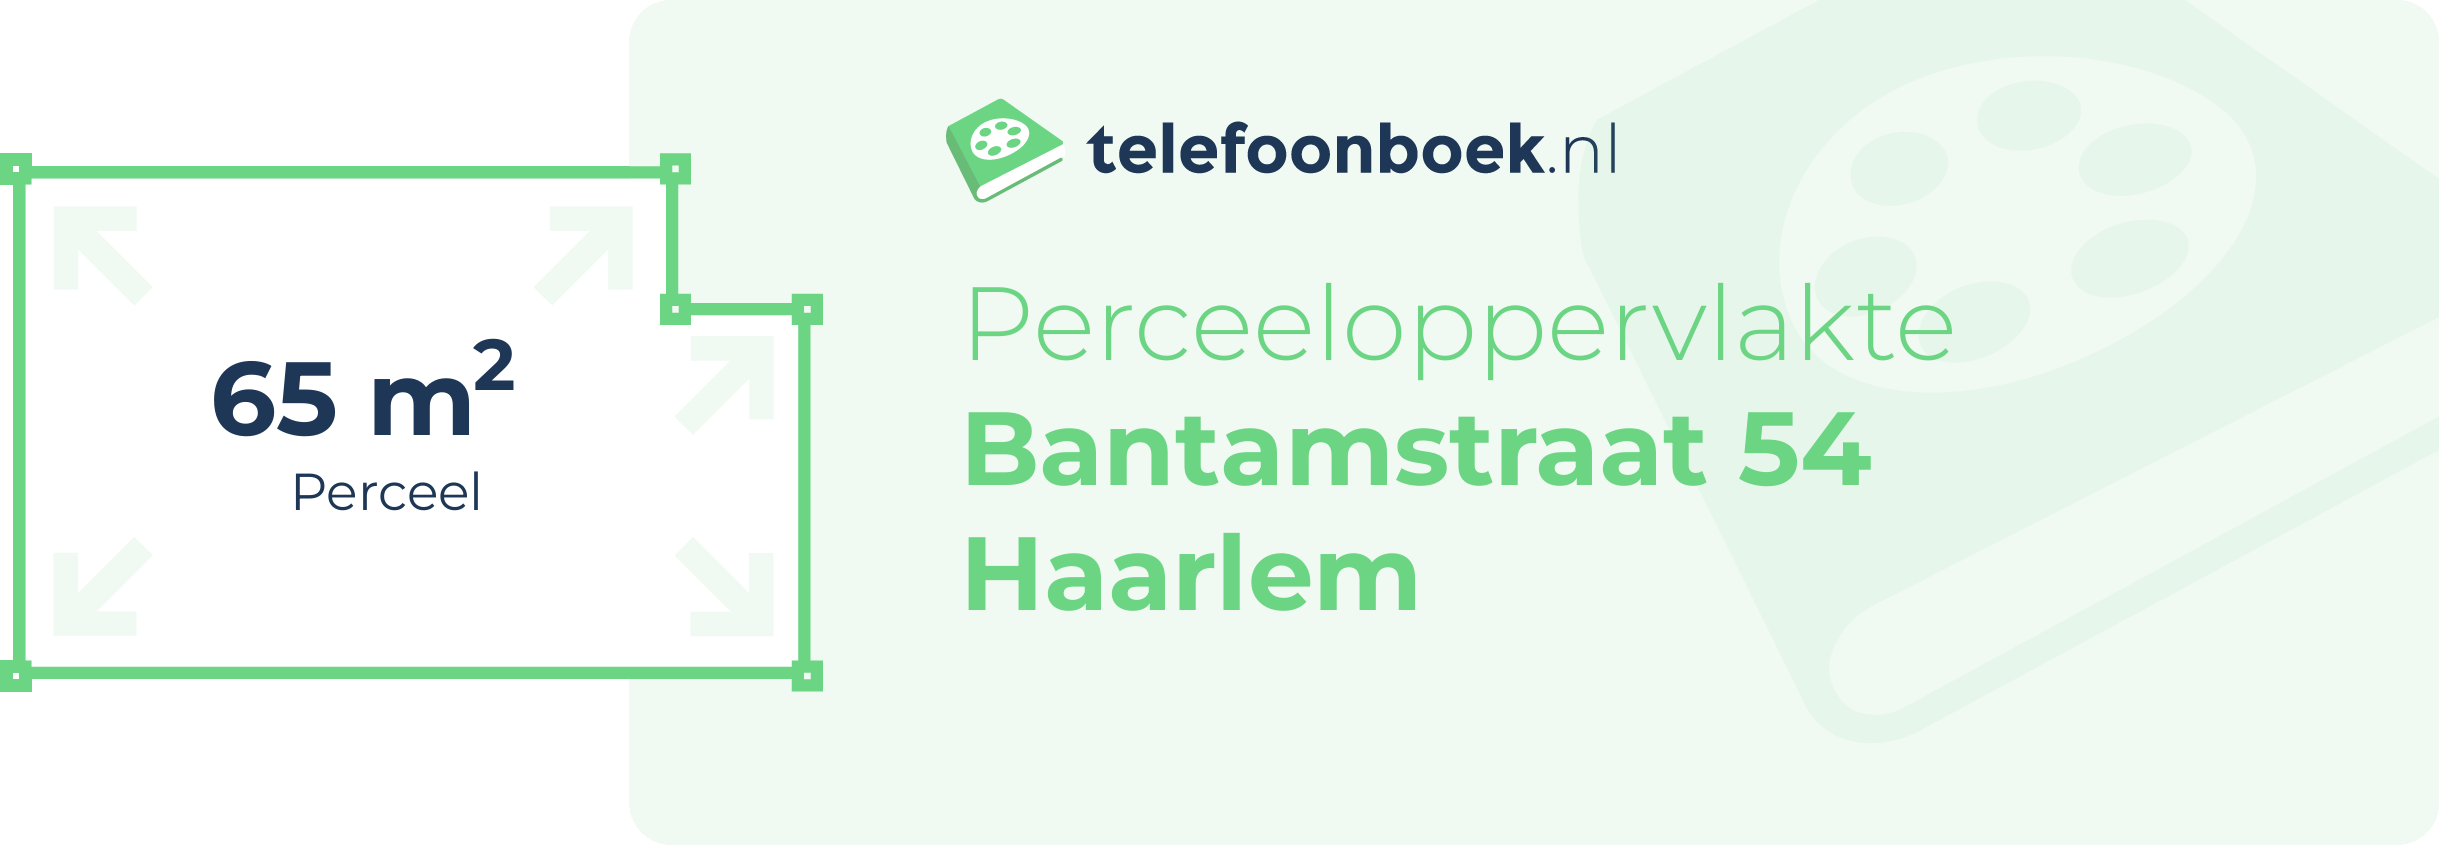 Perceeloppervlakte Bantamstraat 54 Haarlem